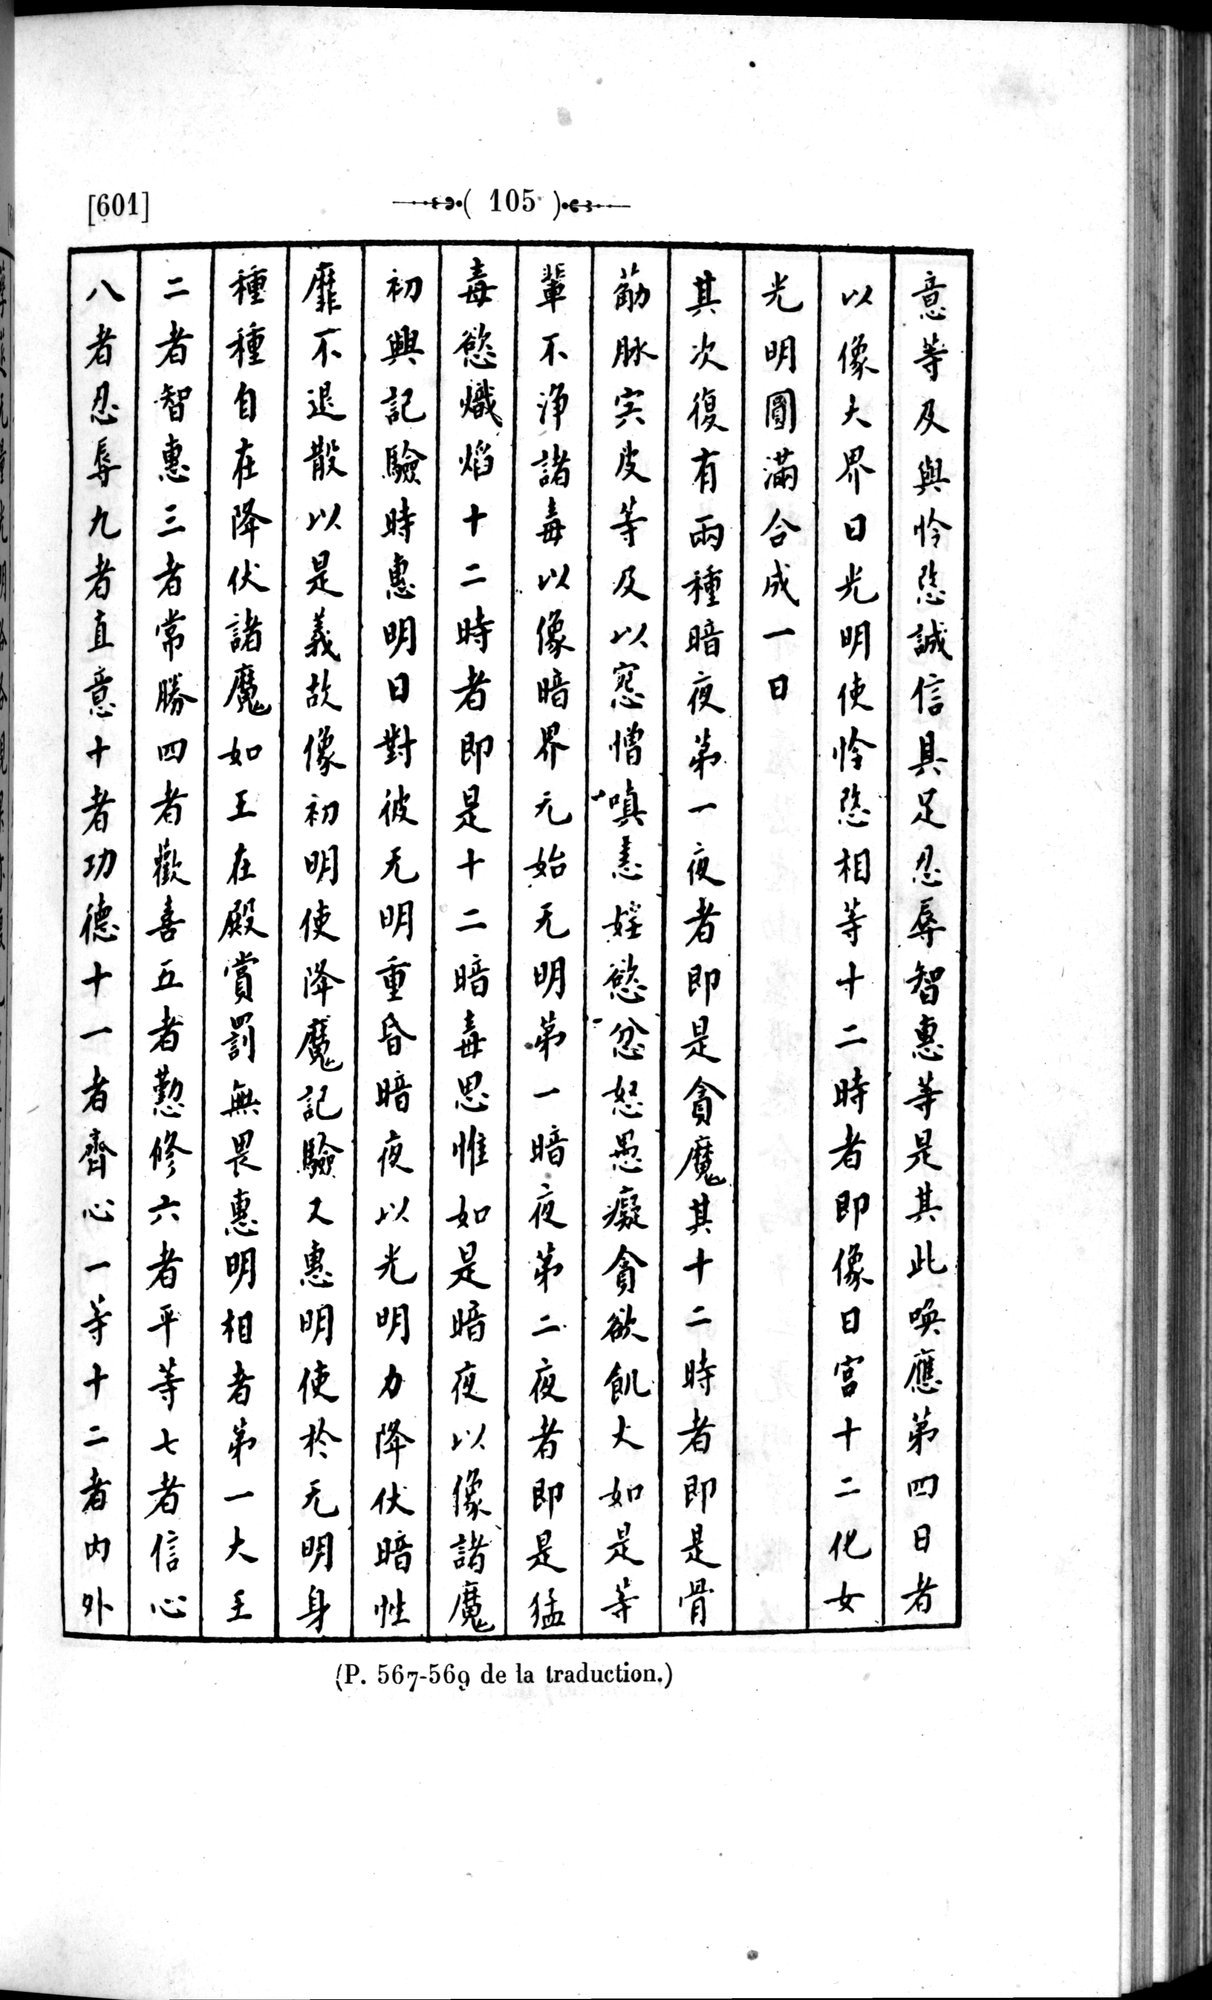 Un traité manichéen retrouvé en Chine : vol.1 / Page 115 (Grayscale High Resolution Image)